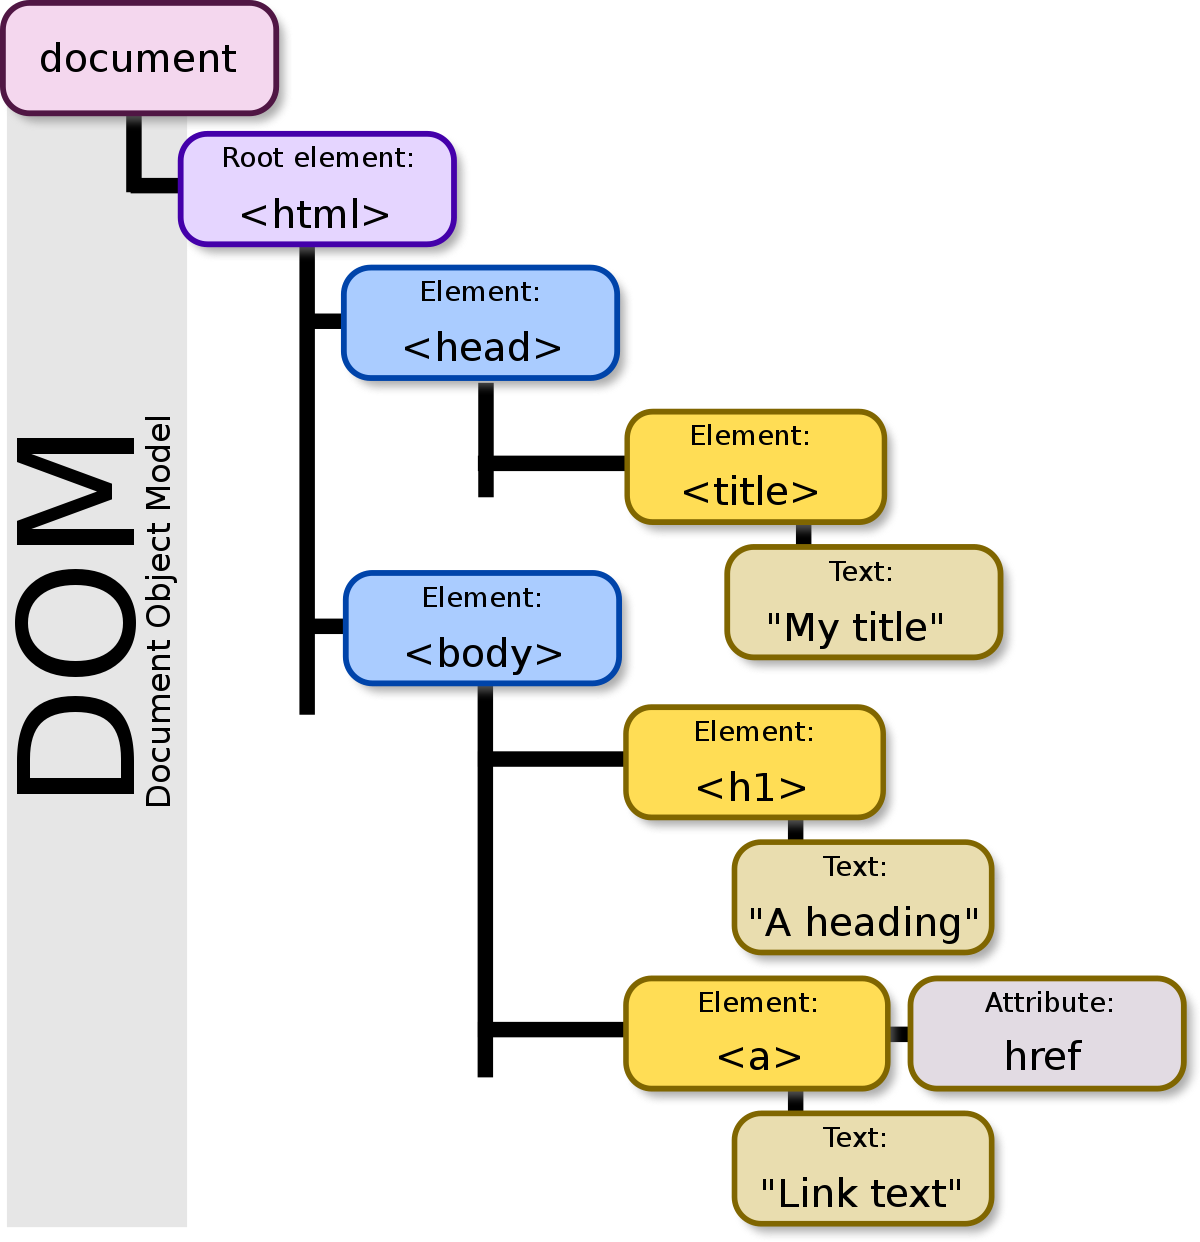 See [DOM model](https://en.wikipedia.org/wiki/Document_Object_Model) on Wikipedia